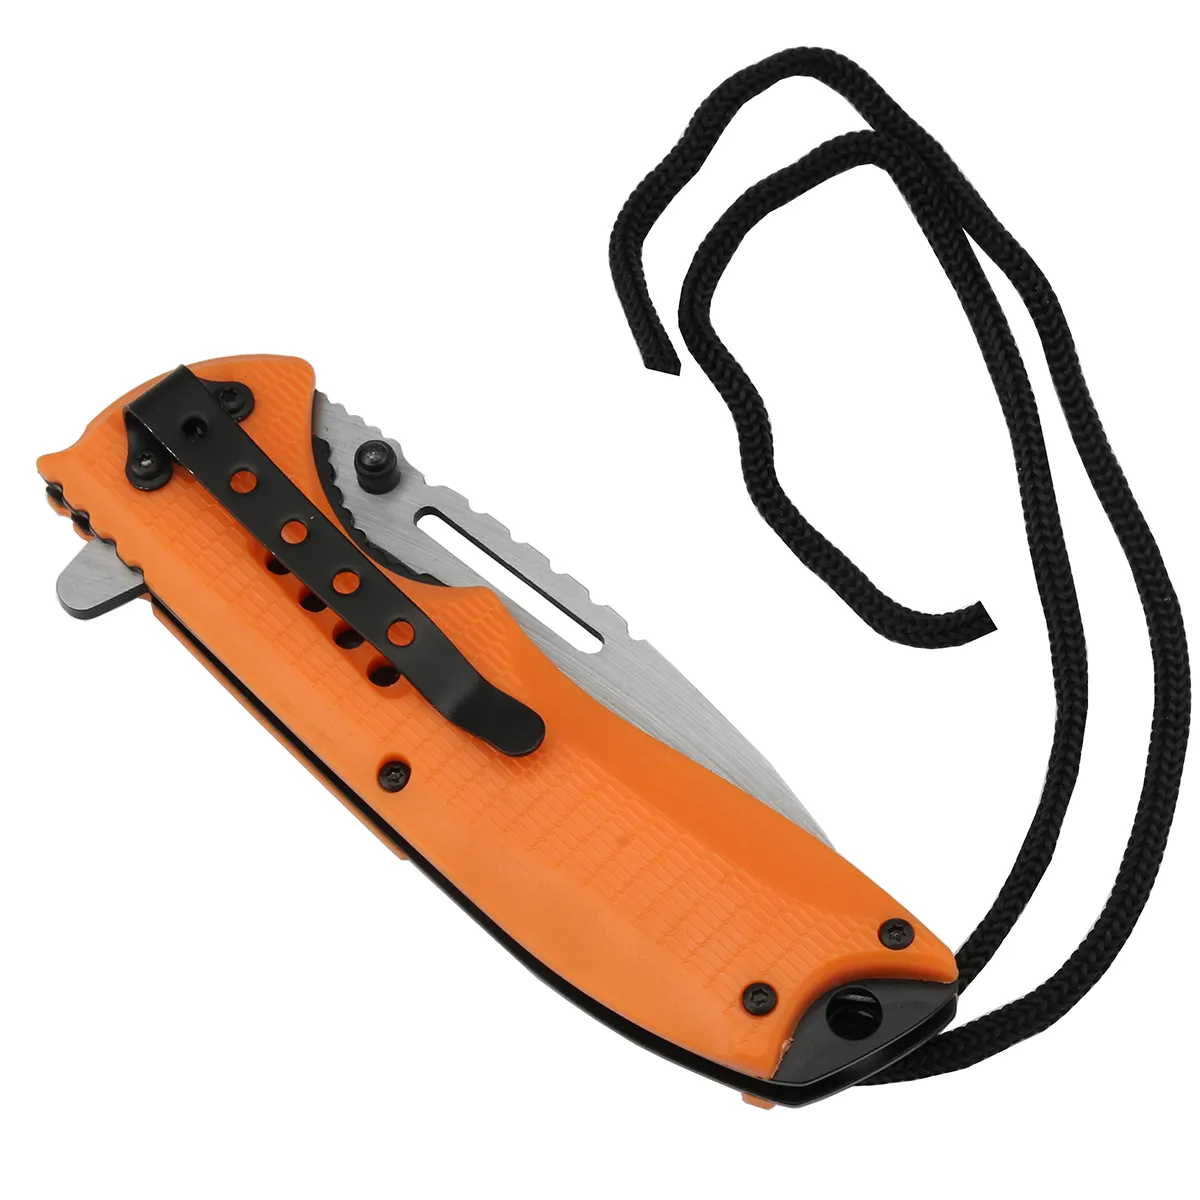 Карманный складной нож для кемпинга, PK-1148, оранжевый цвет